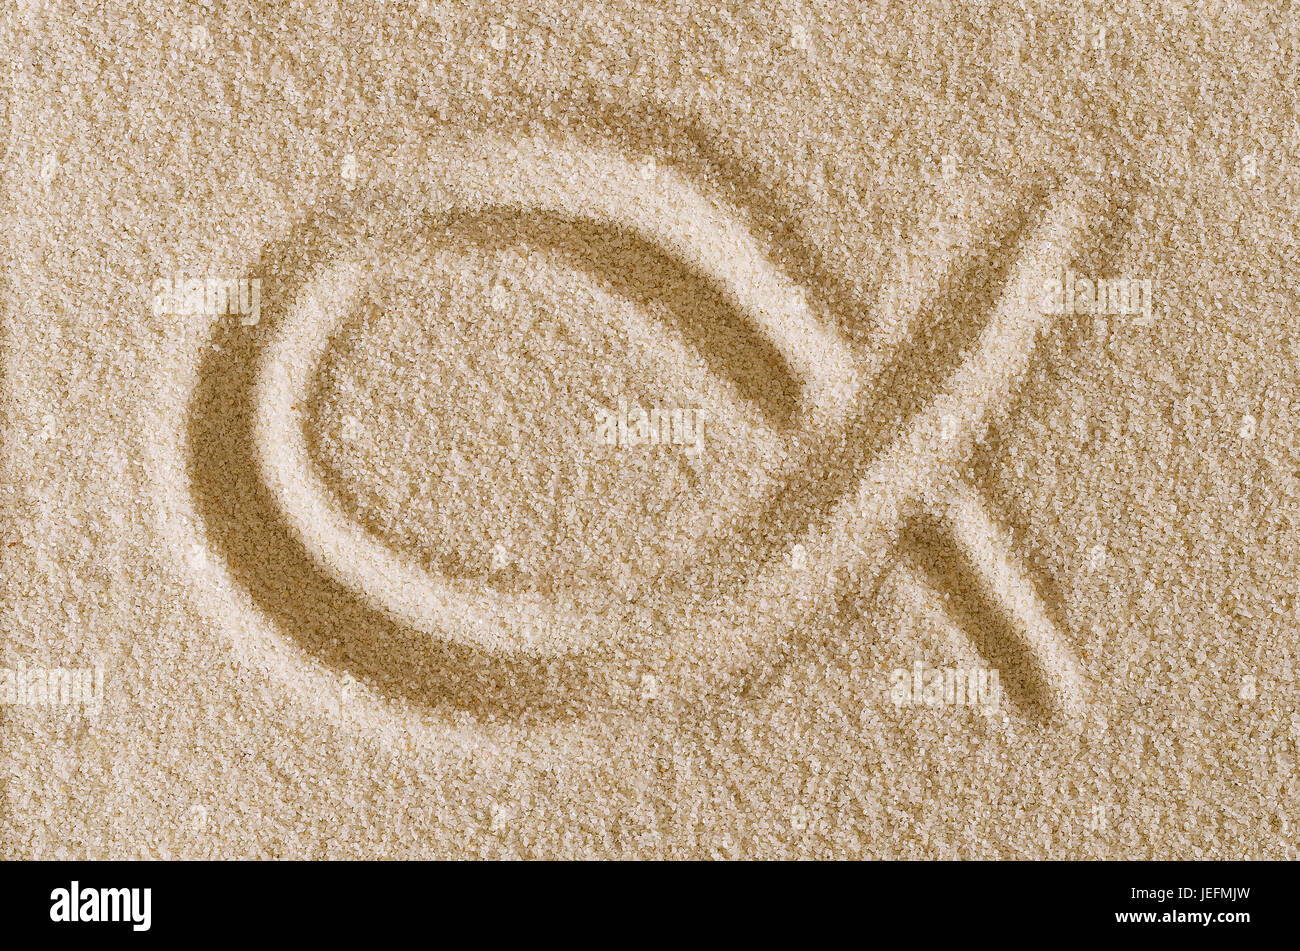 Gesù il simbolo del pesce, disegnata nella sabbia. Colophon e forma del ichthys, anche ichthus, ocra in granelli di sabbia. Il segno è costituito da due archi intersecantisi. Foto Stock